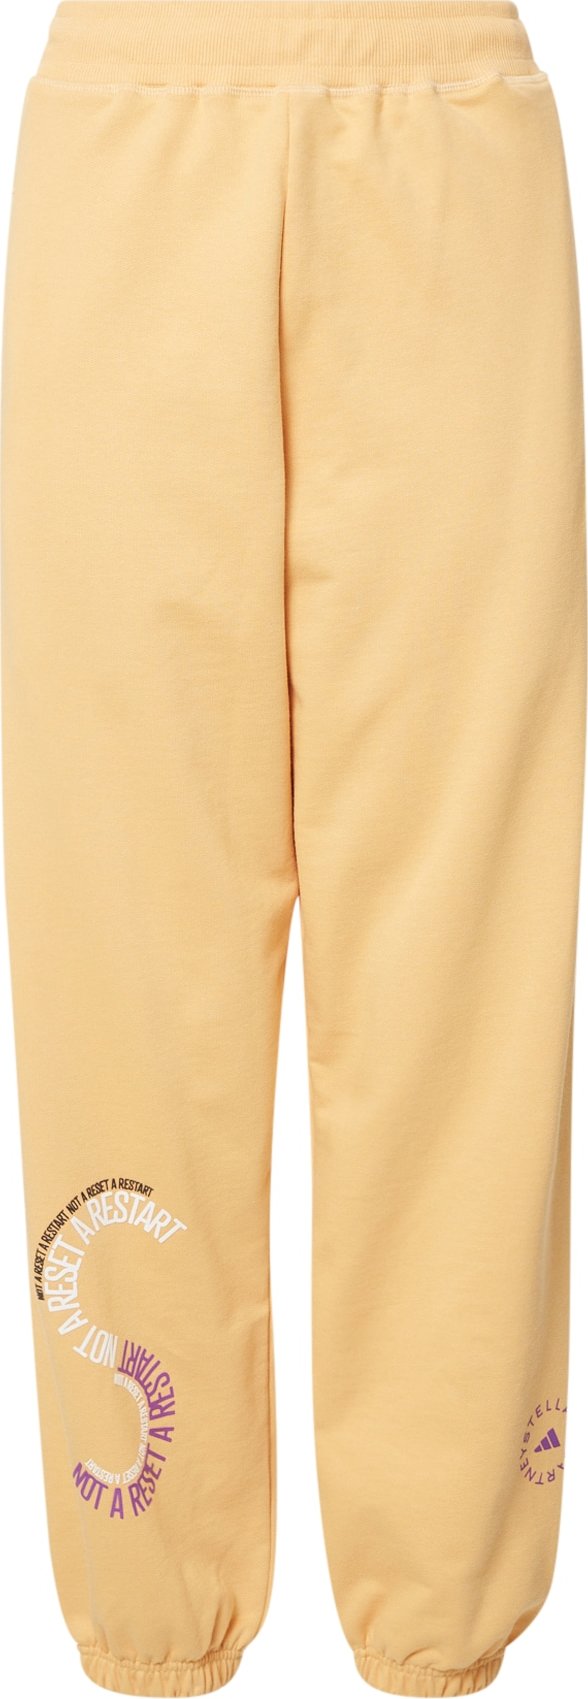 ADIDAS BY STELLA MCCARTNEY Sportovní kalhoty pastelově žlutá / tmavě fialová / bílá